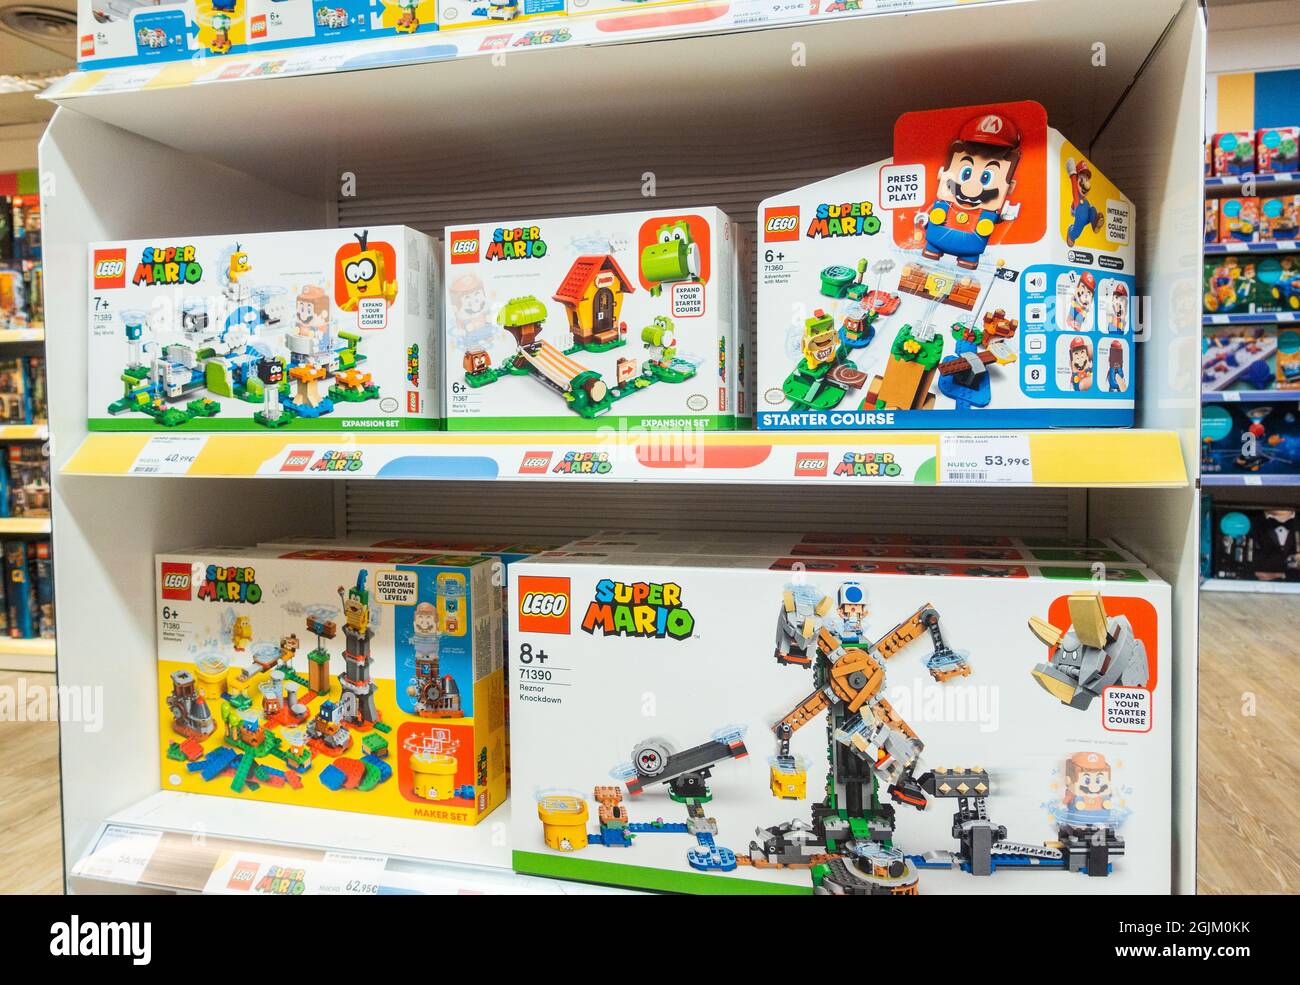 Super Mario Lego dans le magasin de jouets Photo Stock - Alamy